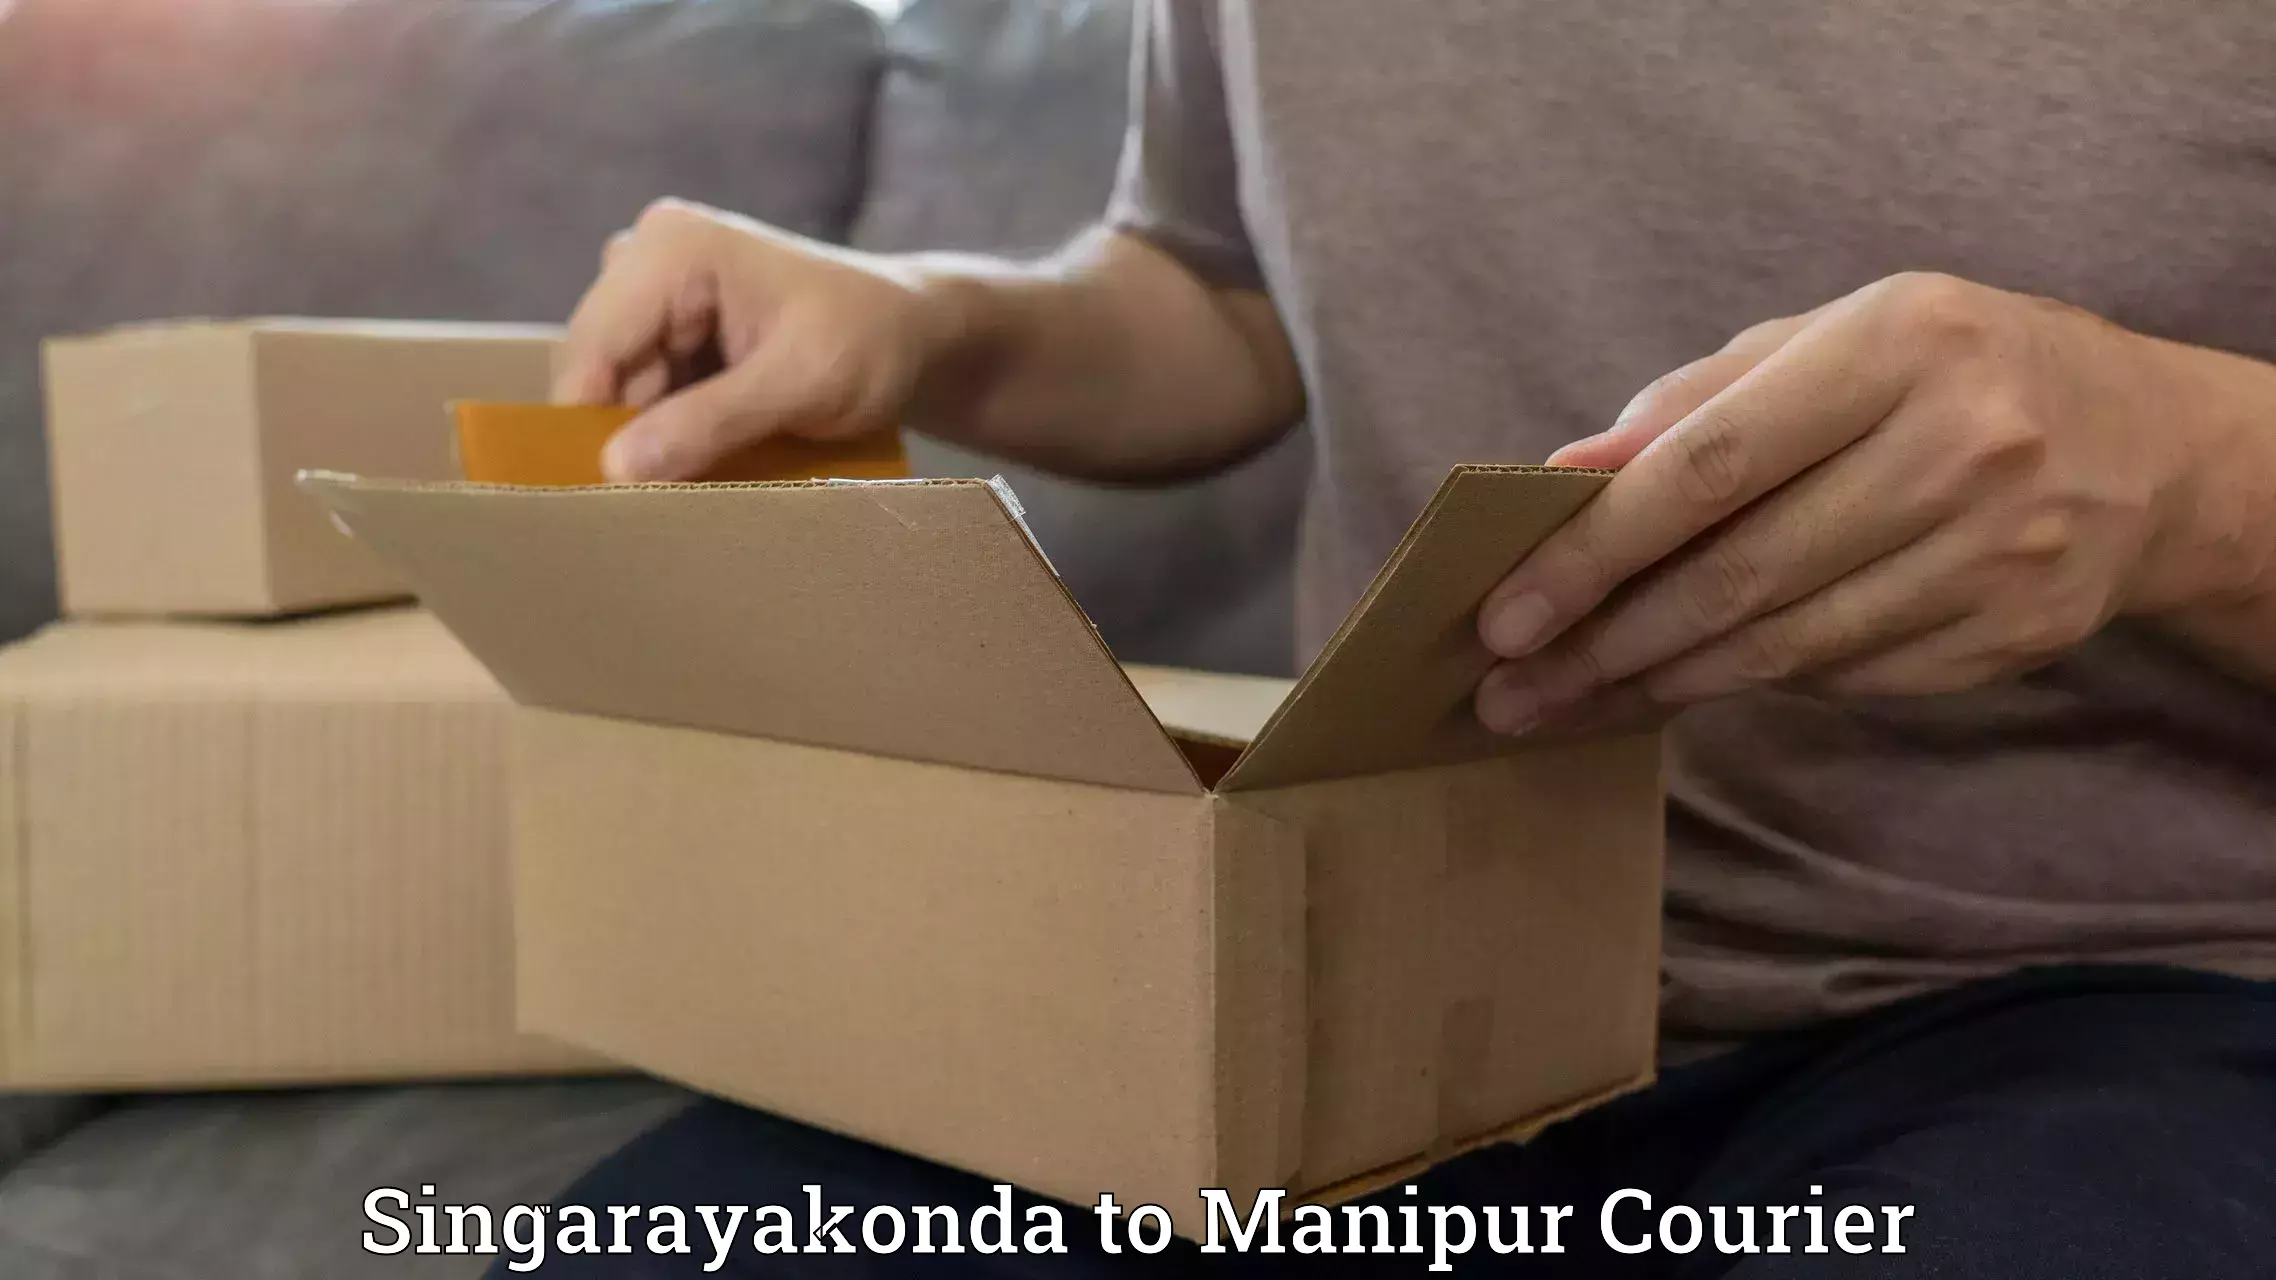 Professional courier handling Singarayakonda to Churachandpur